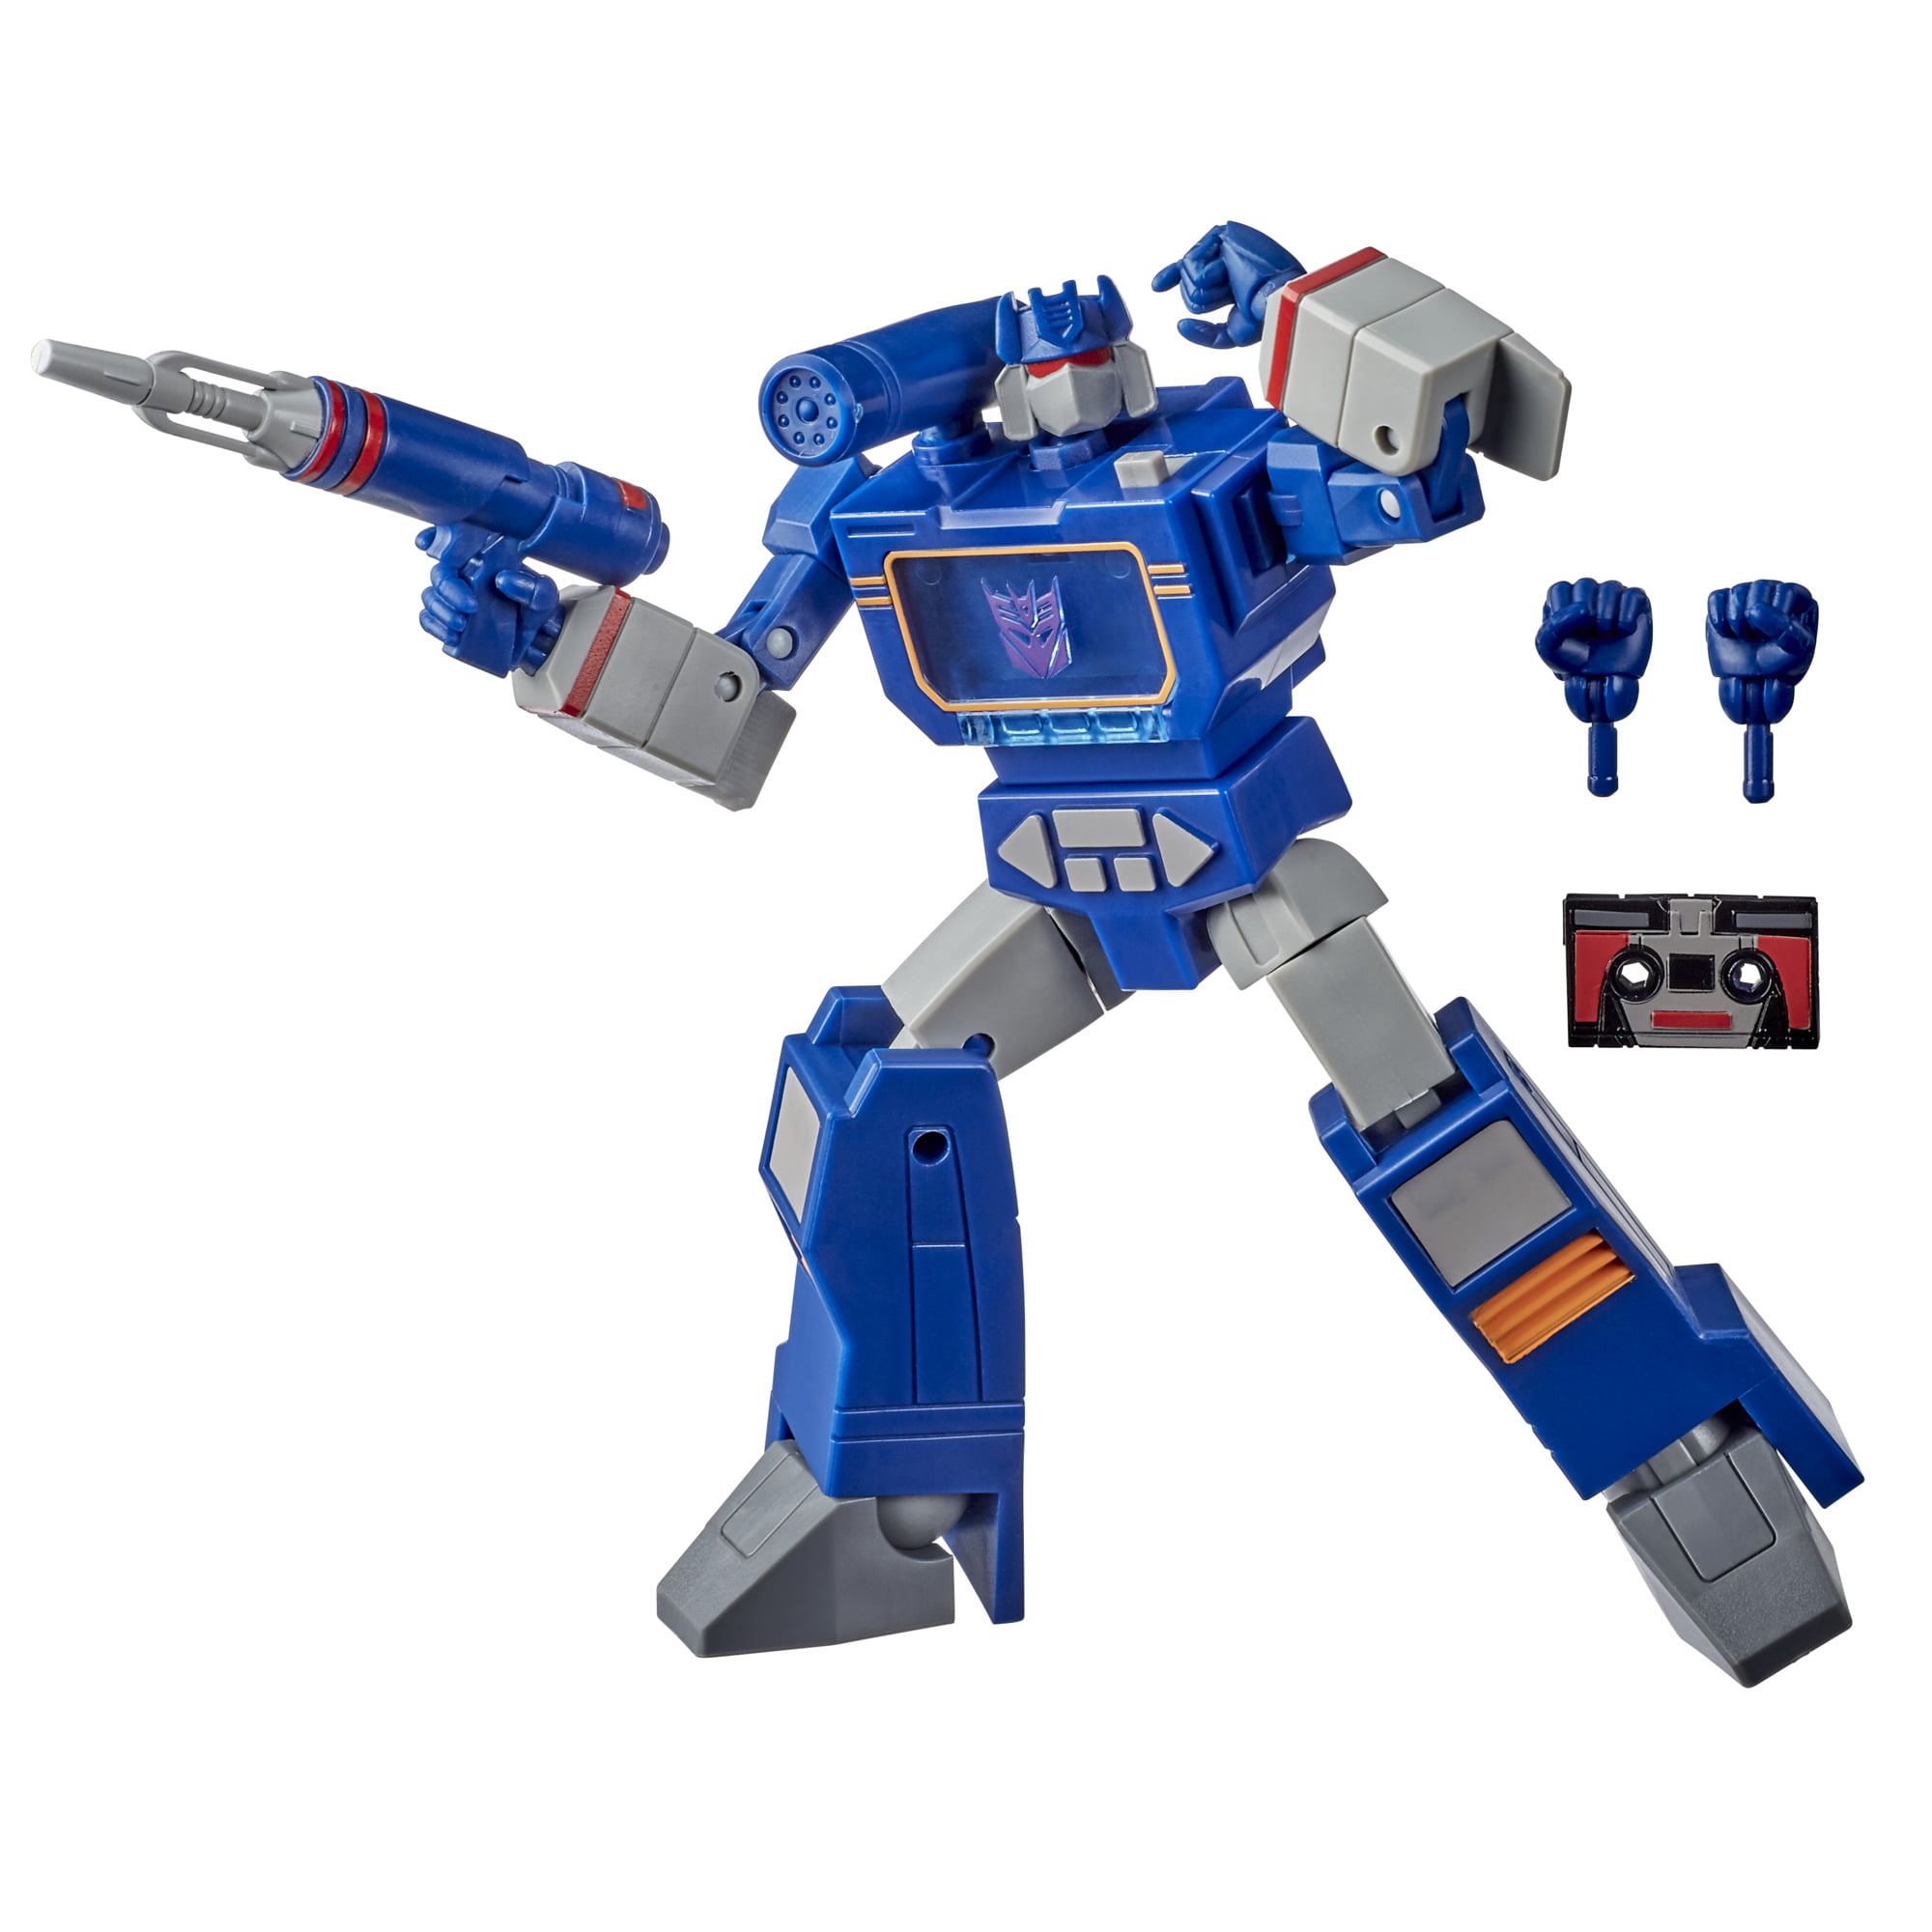 Soundwave Transformers G1 TITAN Guardians Vinyl Action Figure 6" Walmart Hasbro for sale online